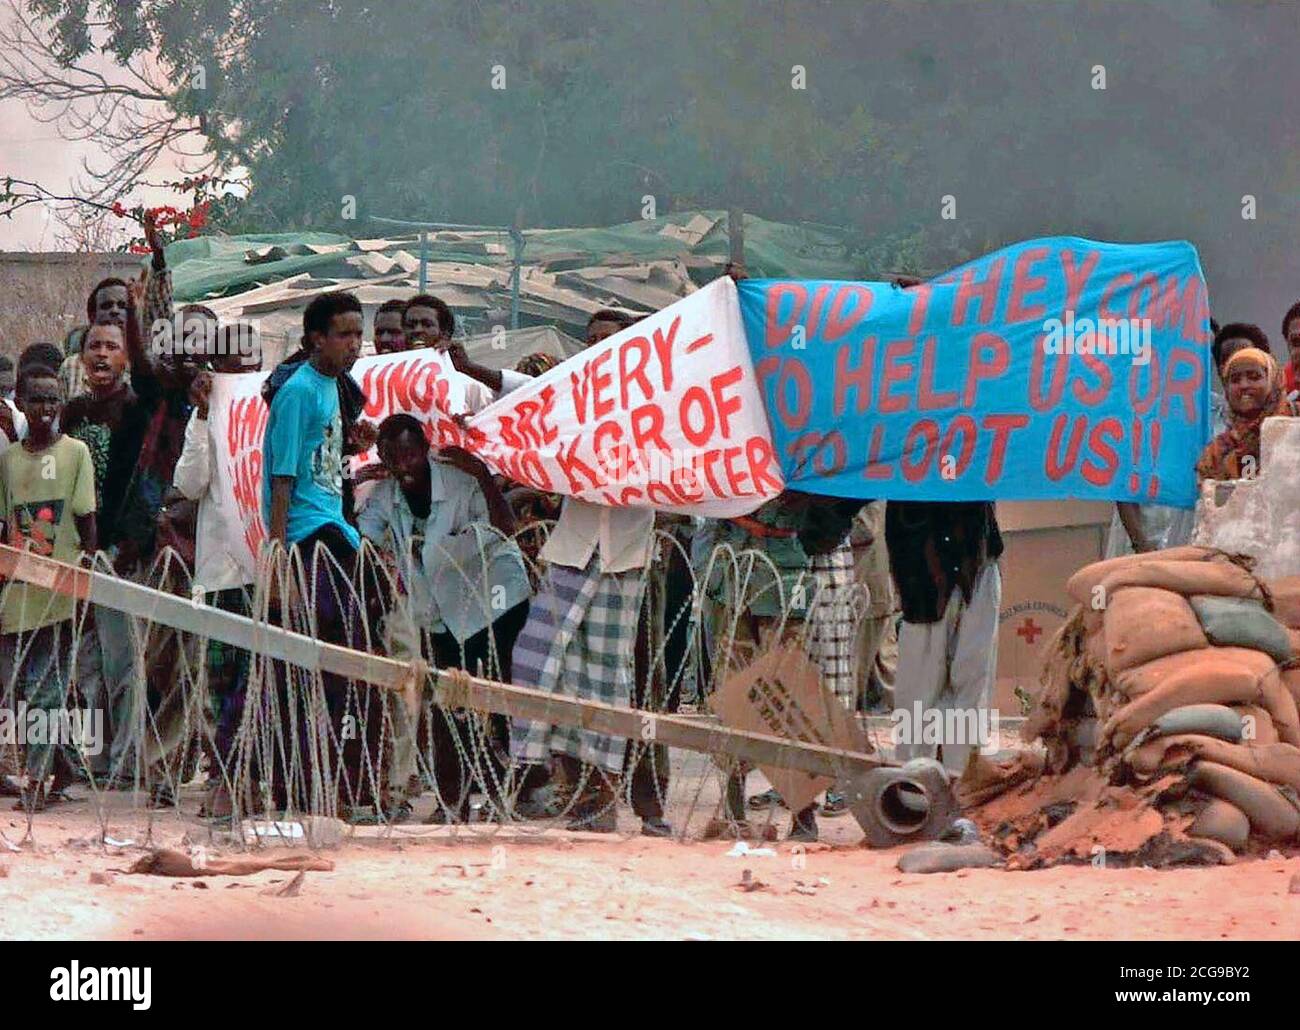 1993 - Les personnes tiennent le haut d'une bannière en signe de protestation à la porte 8 de l'ambassade des États-Unis à Mogadiscio. Ils semblent être protestant contre l'existence des forces de coalition affectées à l'Opération Restore Hope. Banque D'Images